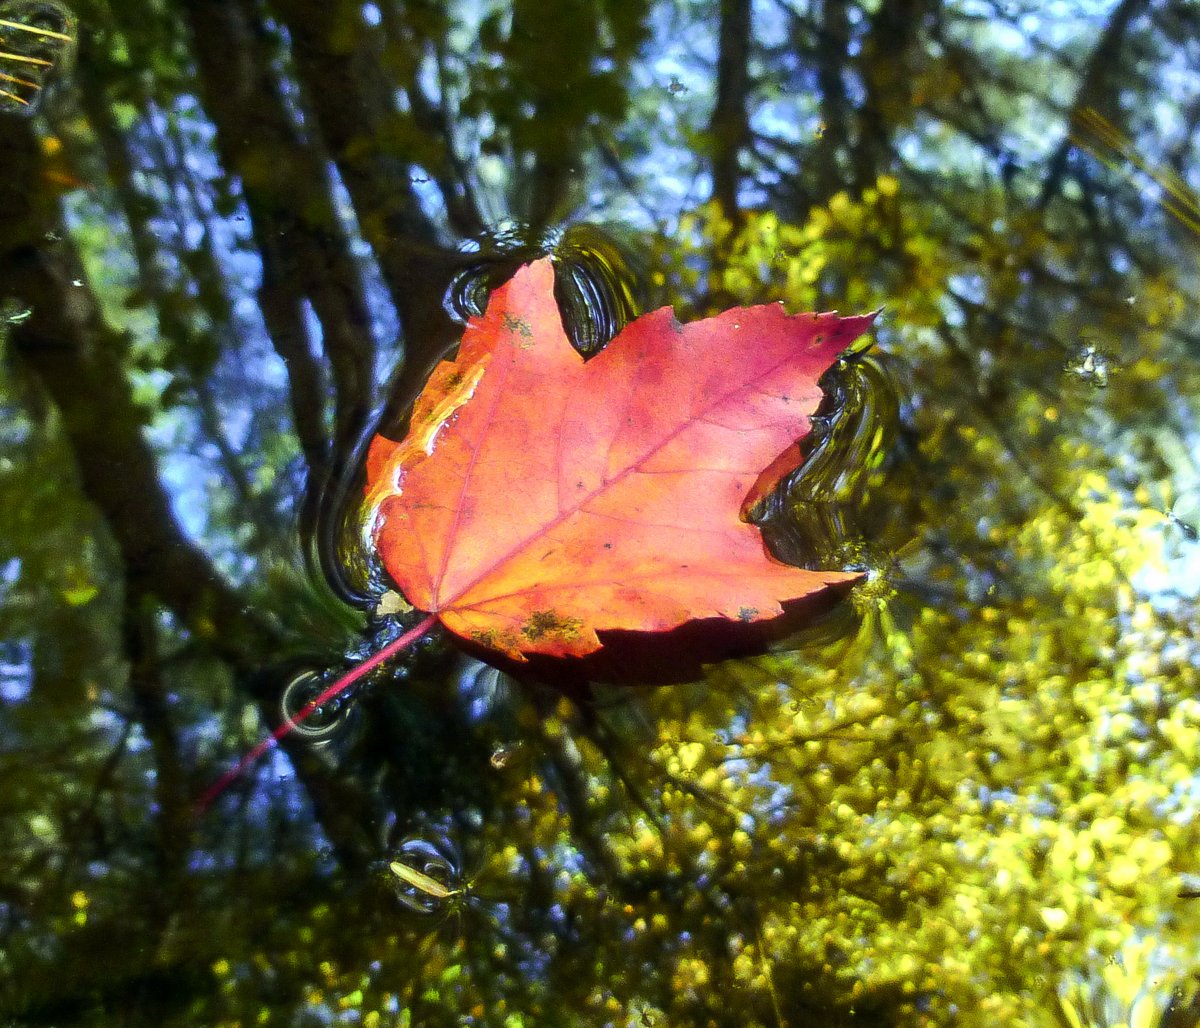 17. Maple Leaf